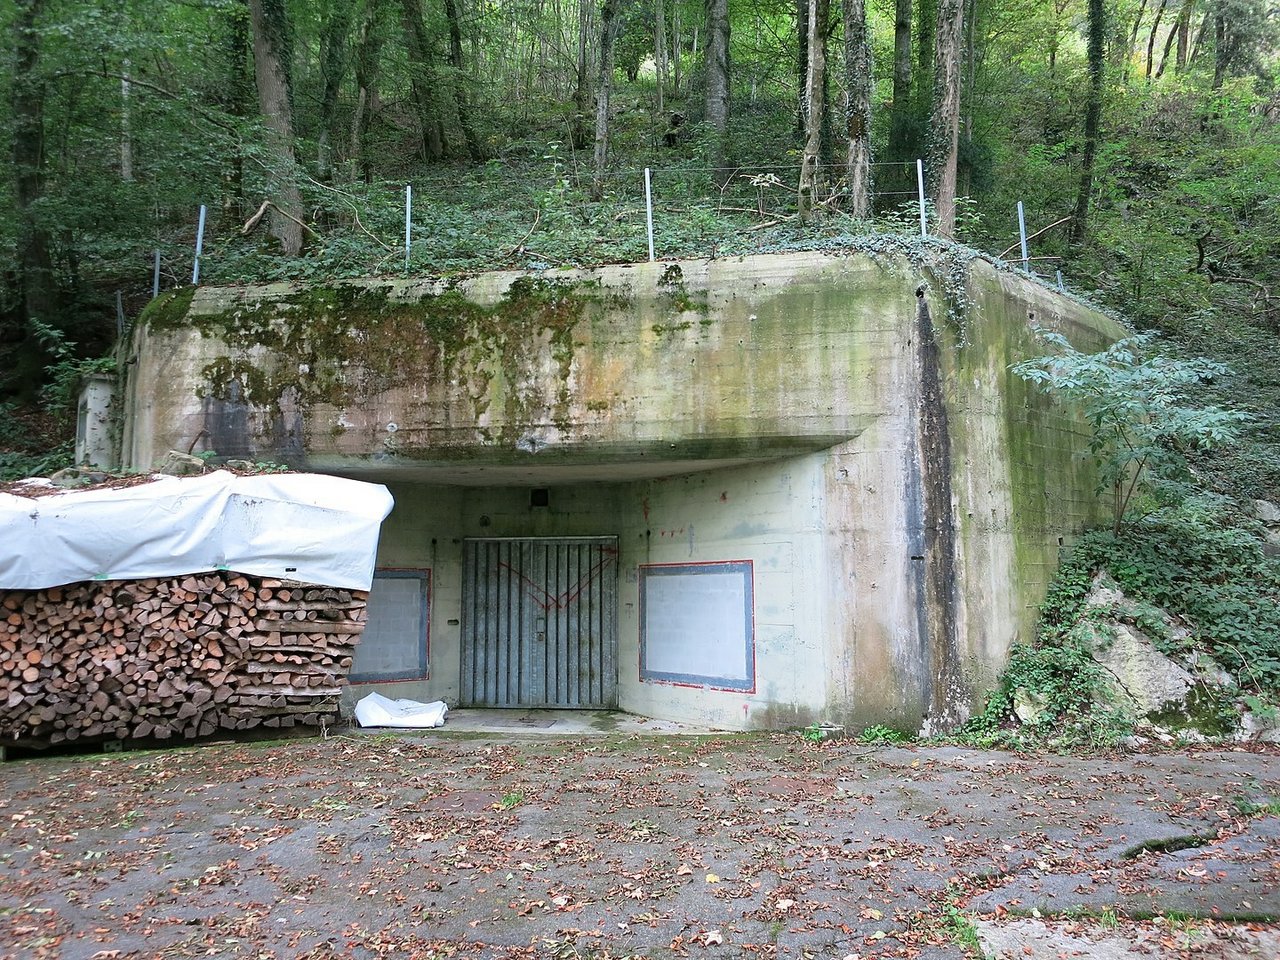 In Bunkern wie diesen soll bald Geflügel gemästet werden. Der Bund reagiert damit auf mögliche Versorgungsengpässe und sucht ab sofort 5-10 Standorte und Betreiber. (Bild Paebi) 